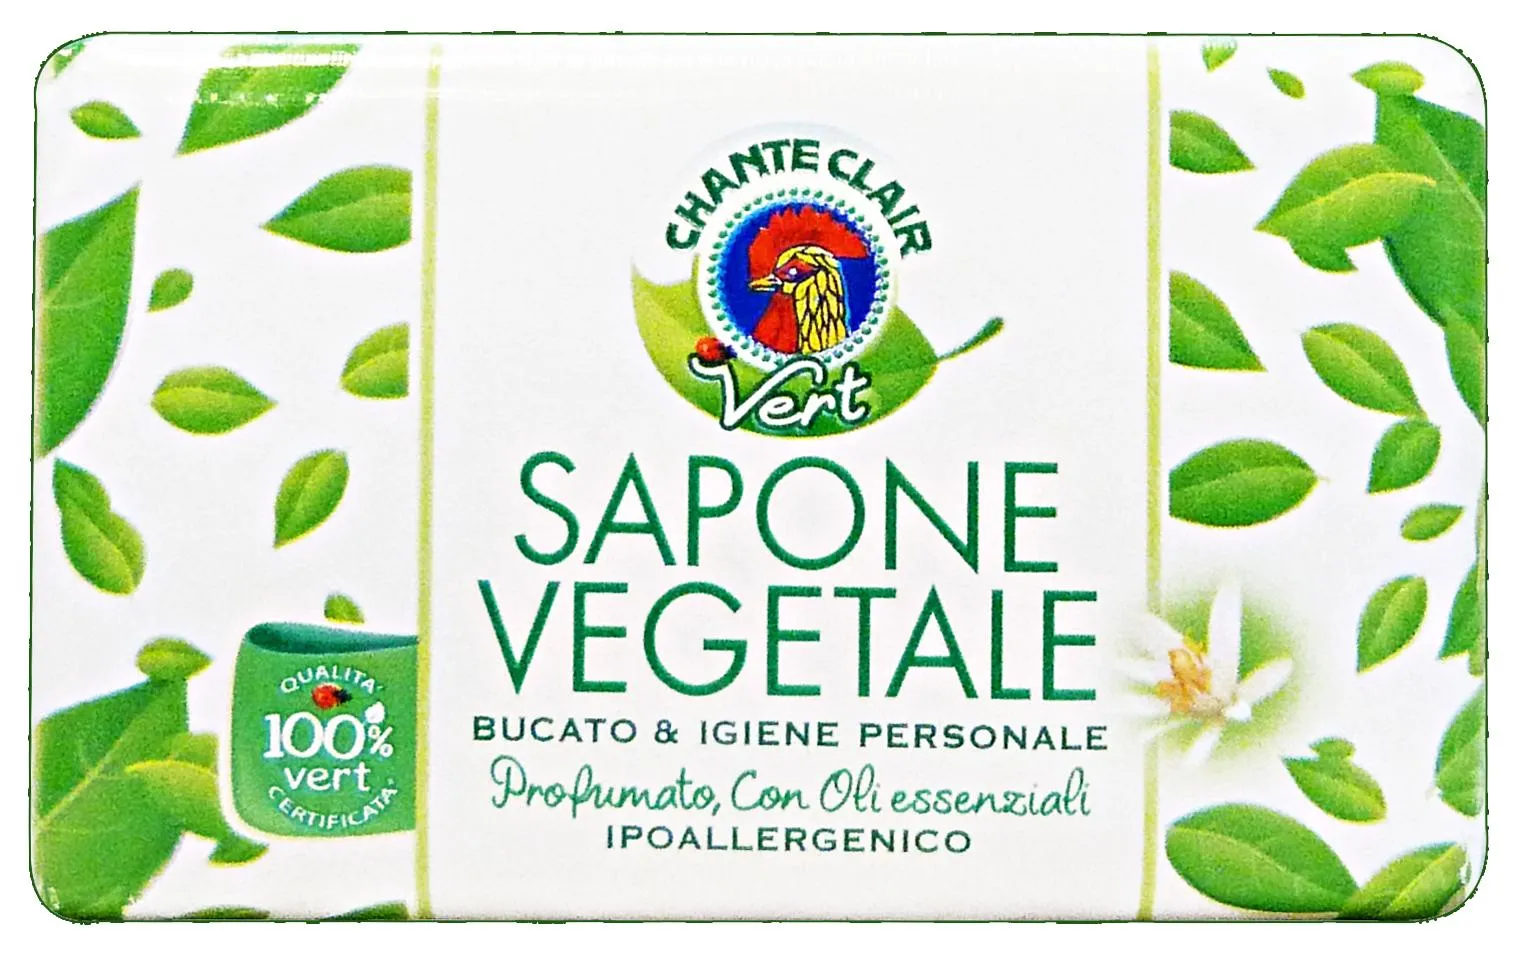 "CHANTE CLAIR Saponetta 100% vegetale vert 100 gr. - sapone"